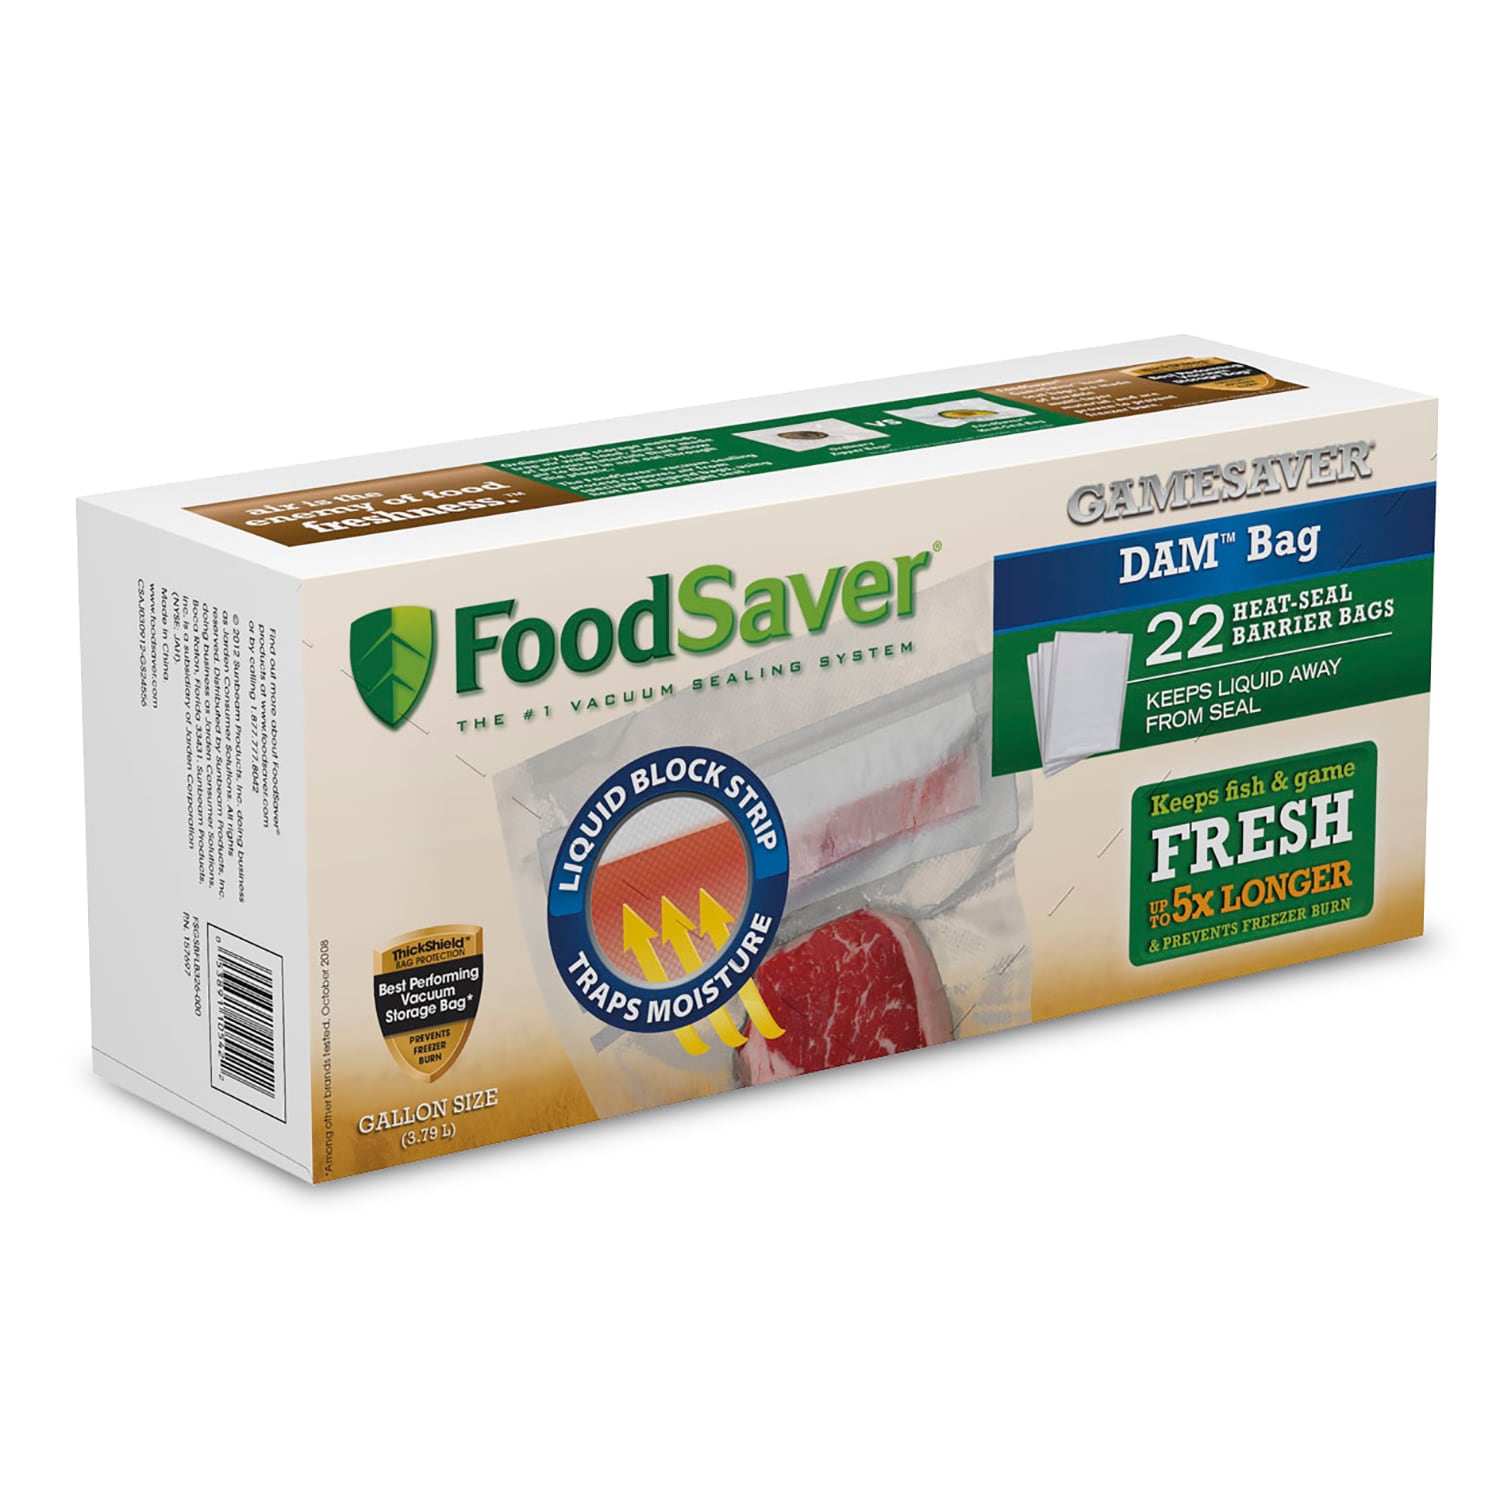 FoodSaver GameSaver DAM Gallon Heat-Seal Bags 22 Count - Bed Bath & Beyond  - 11354562